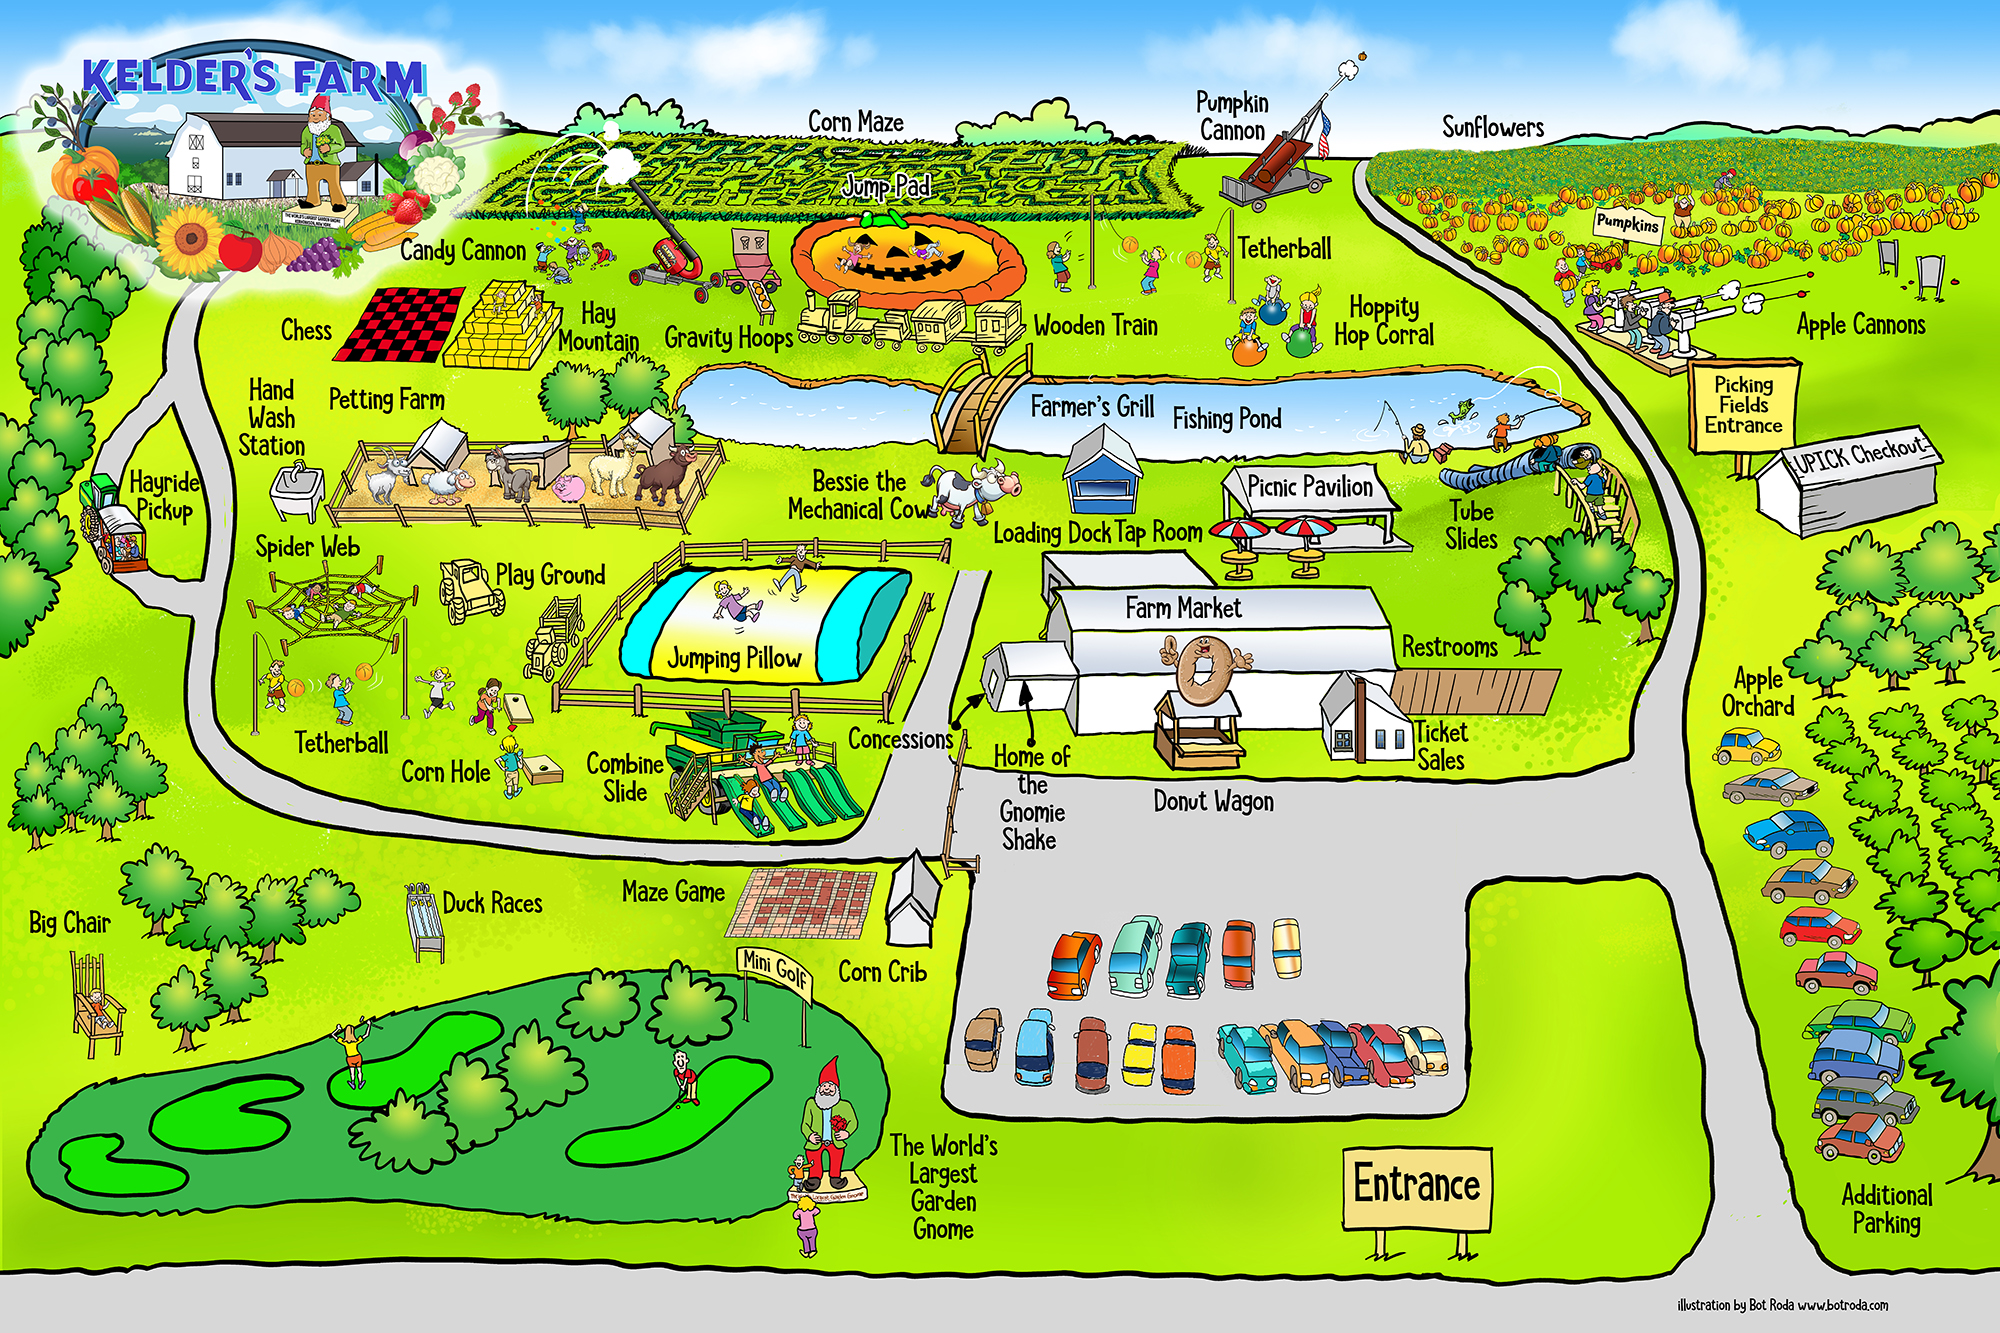 Kelder's Farm Map